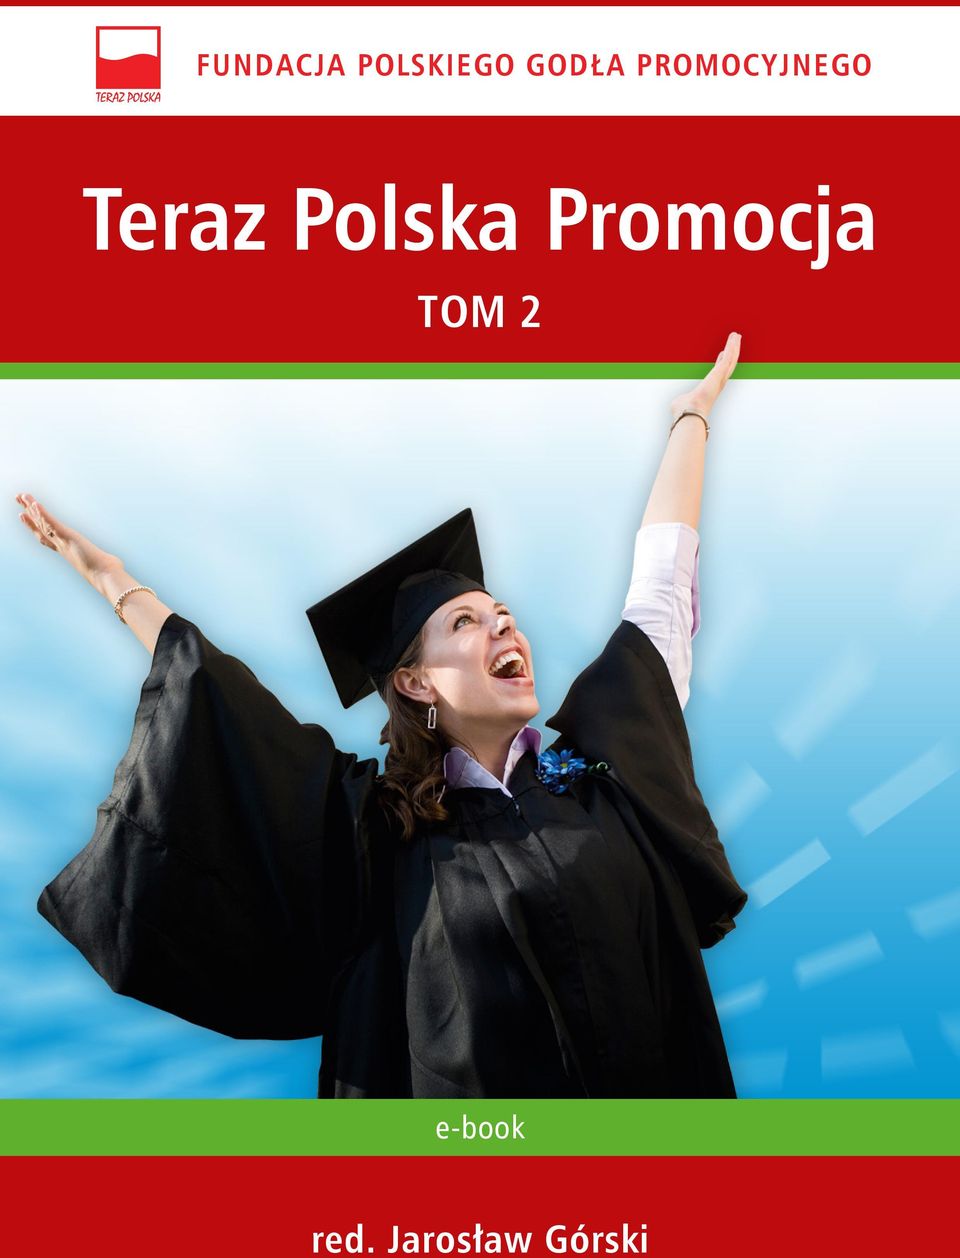 Polska Promocja TOM 2